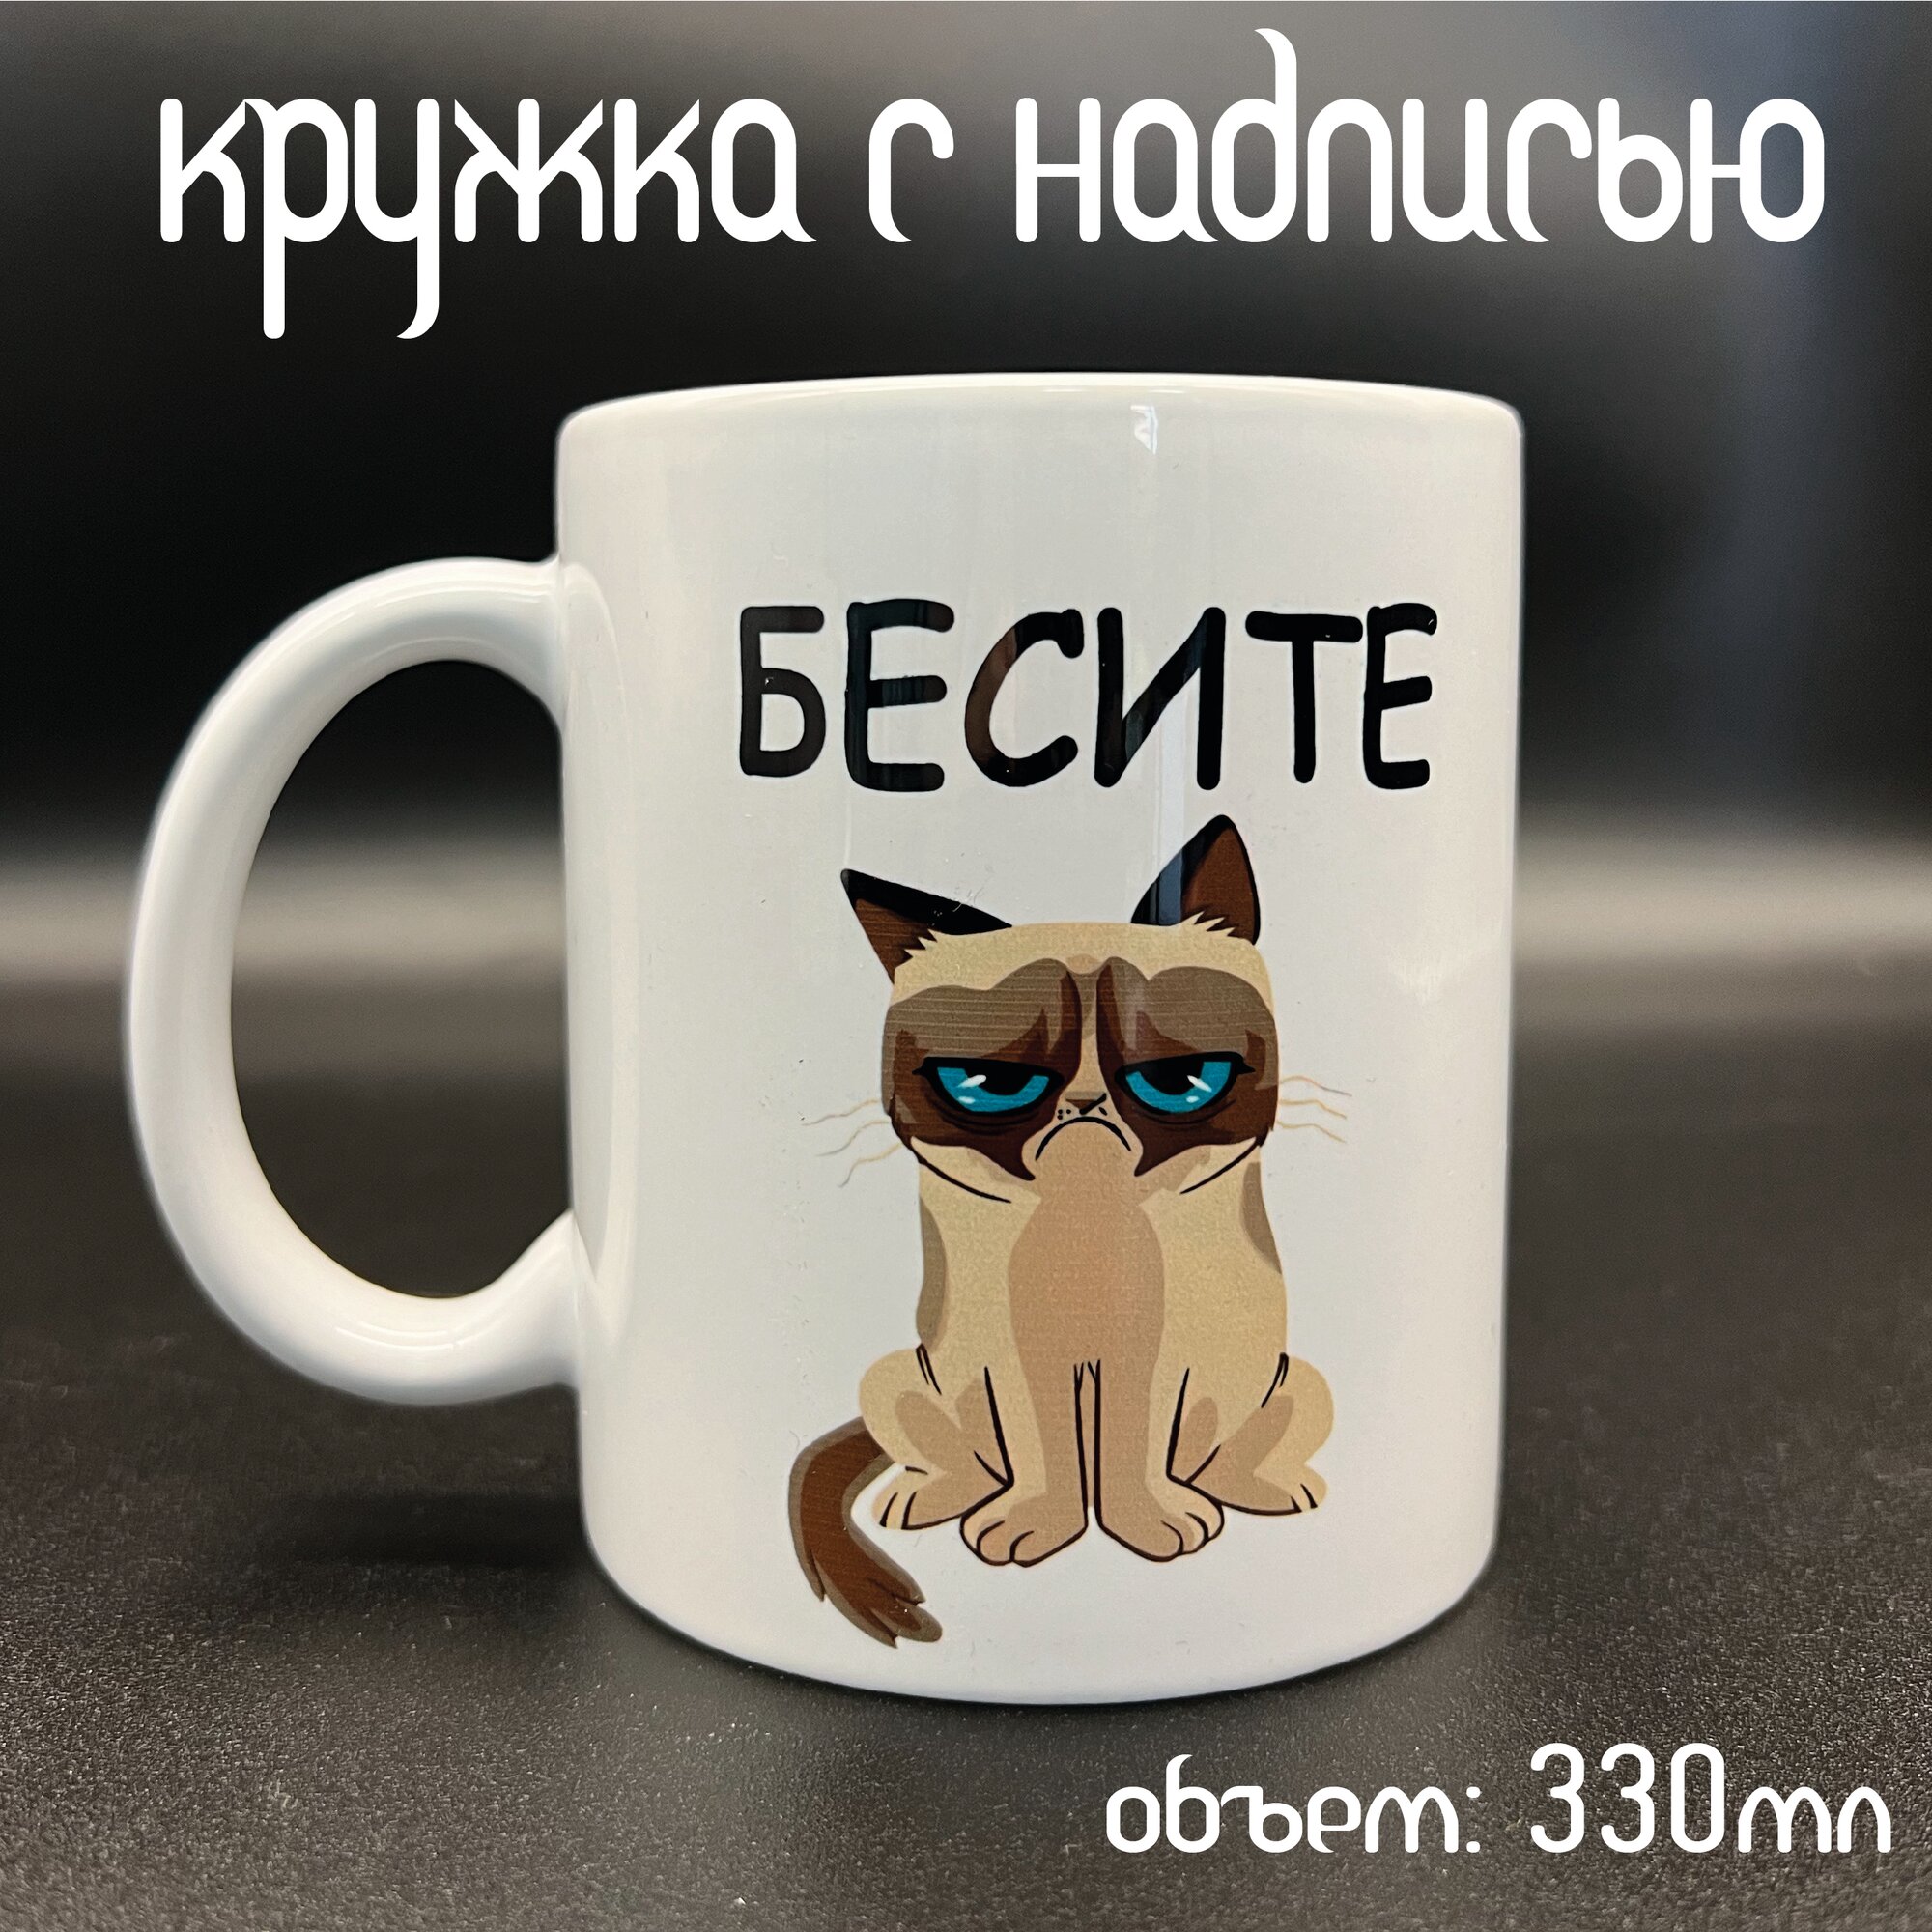 Кружка с надписью и прикольным котиком "Бесите очень сильно" в подарок от бренда ARTKeramica